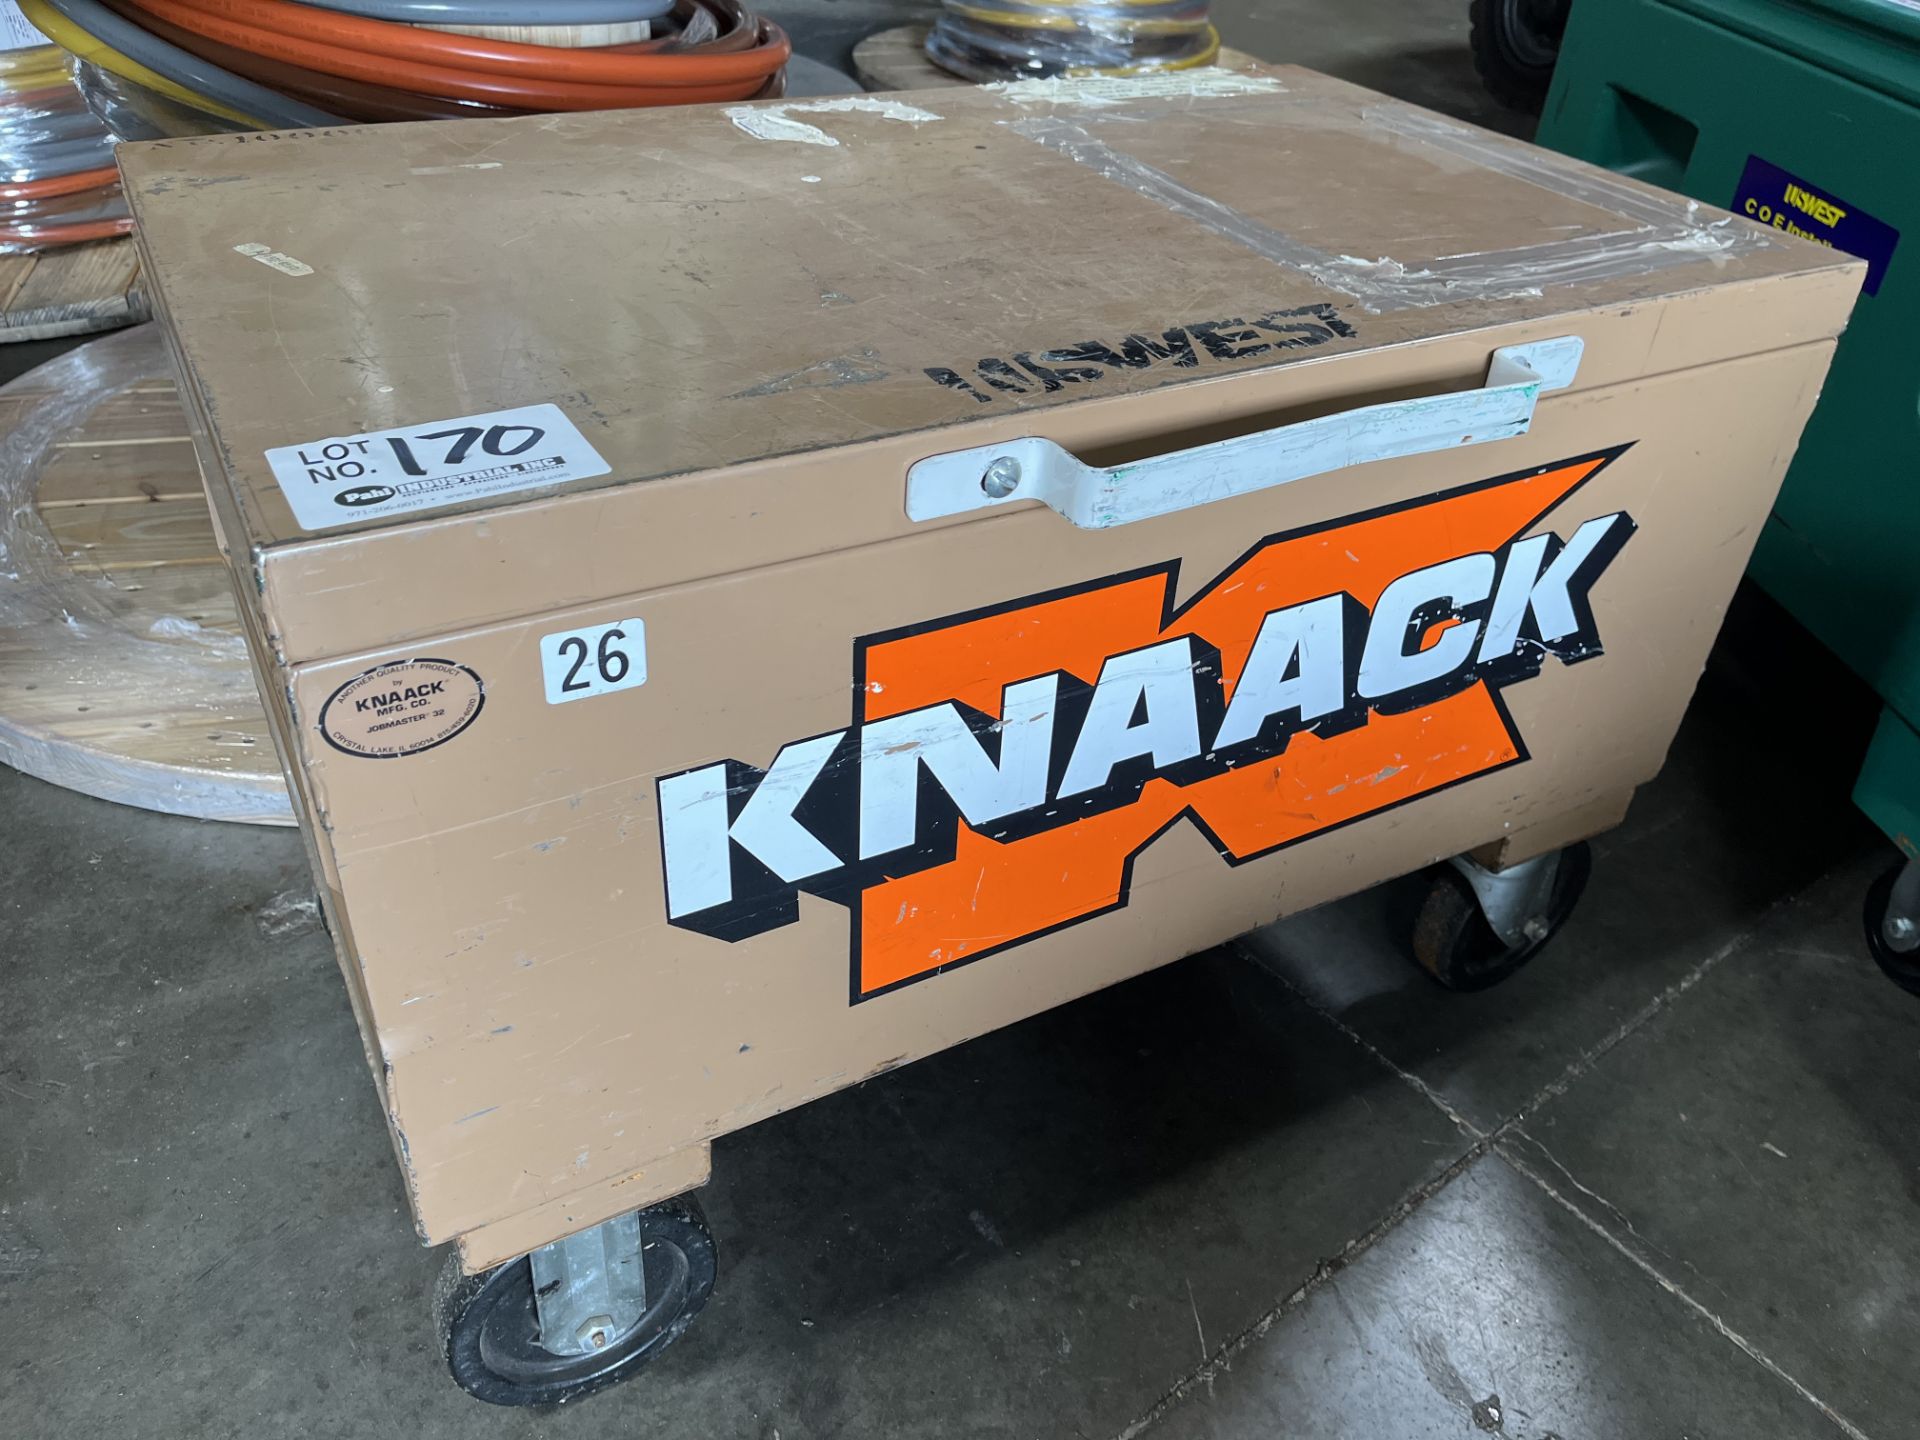 Knaack 14" X 32" X 19" Job Box on casters